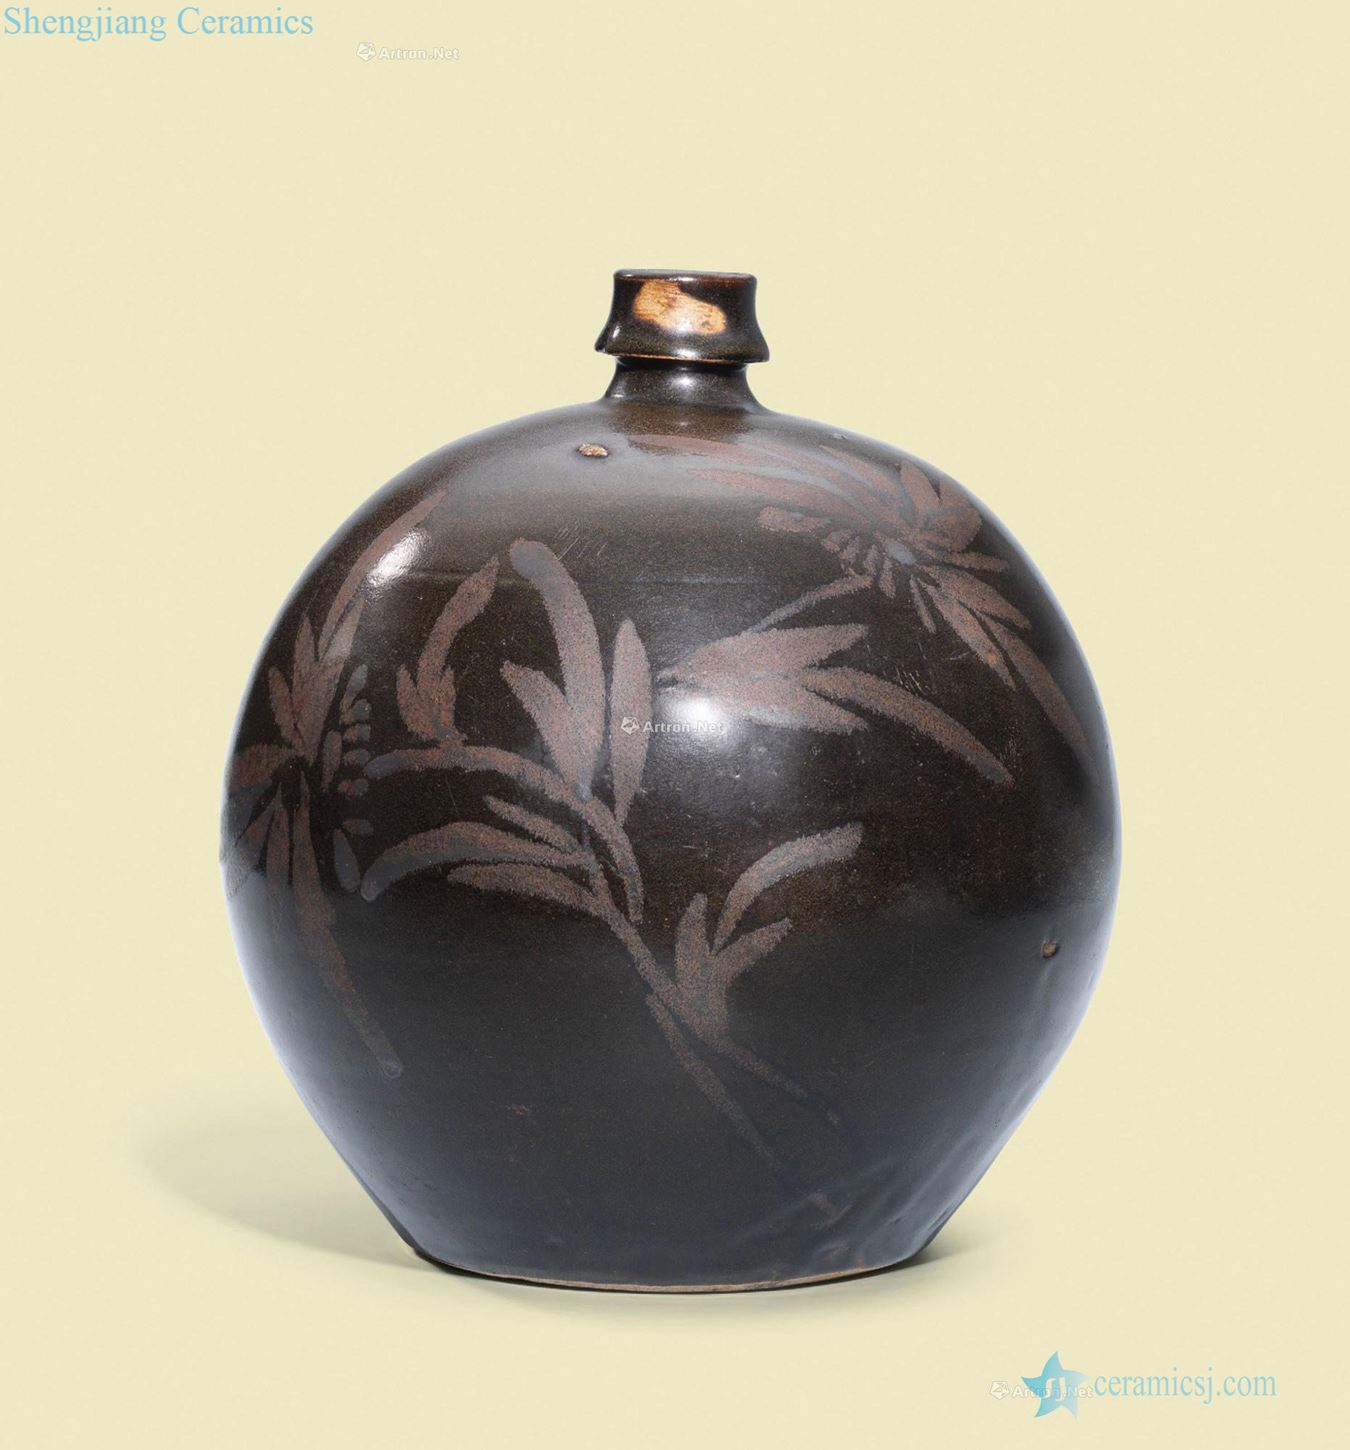 Song magnetic state kiln black glaze rust flowers DuLu bottle